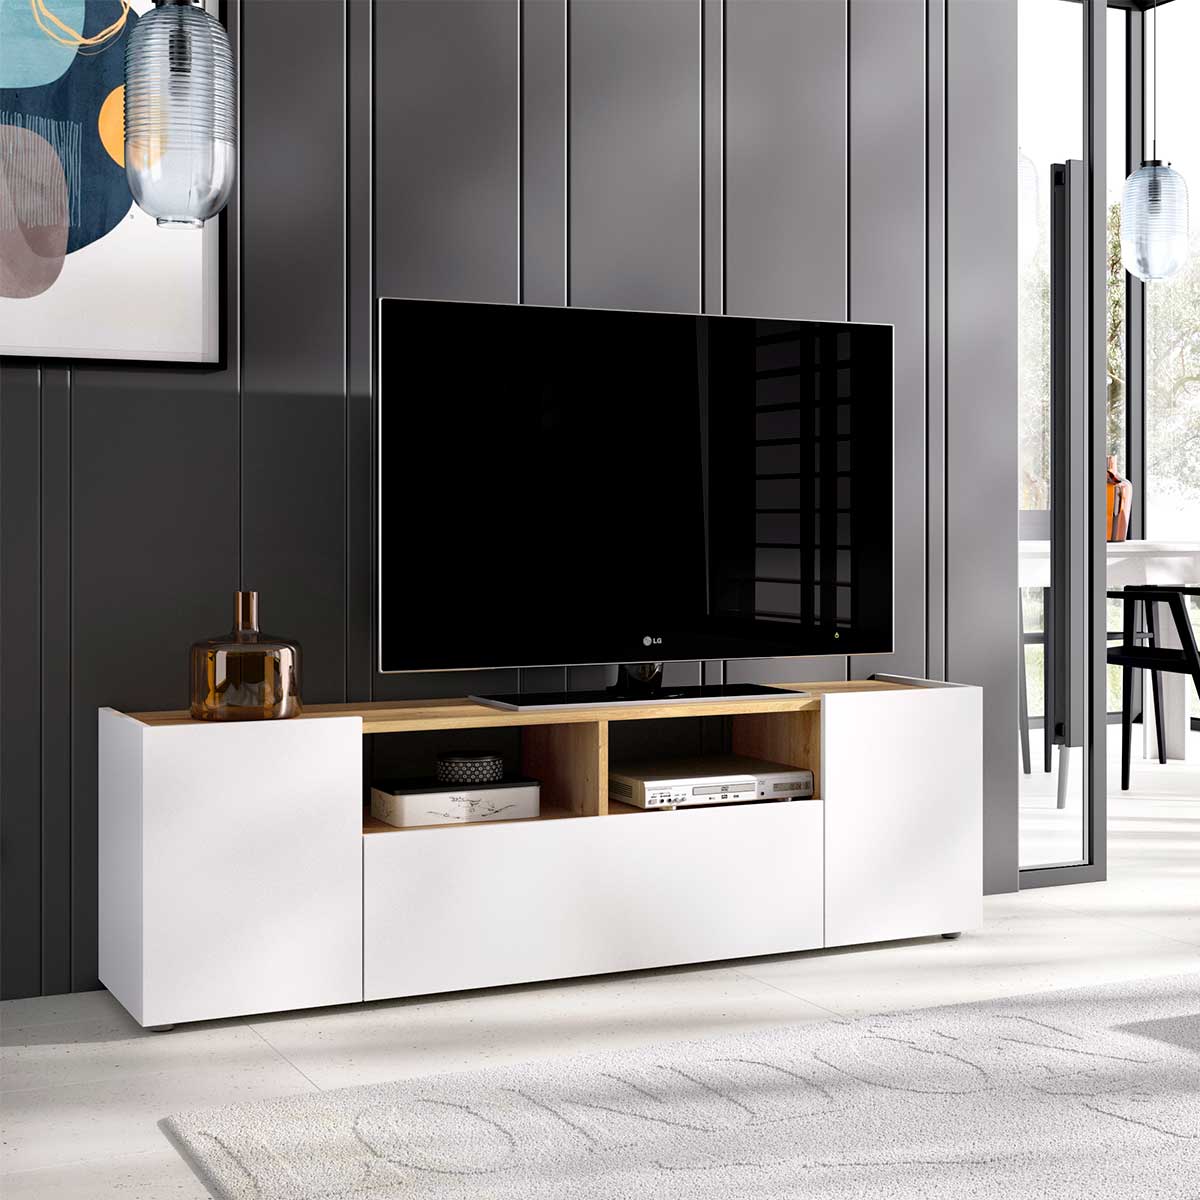 COMPRAR mueble de TV MODERNO de longitud variable ❤ Muebles para TV